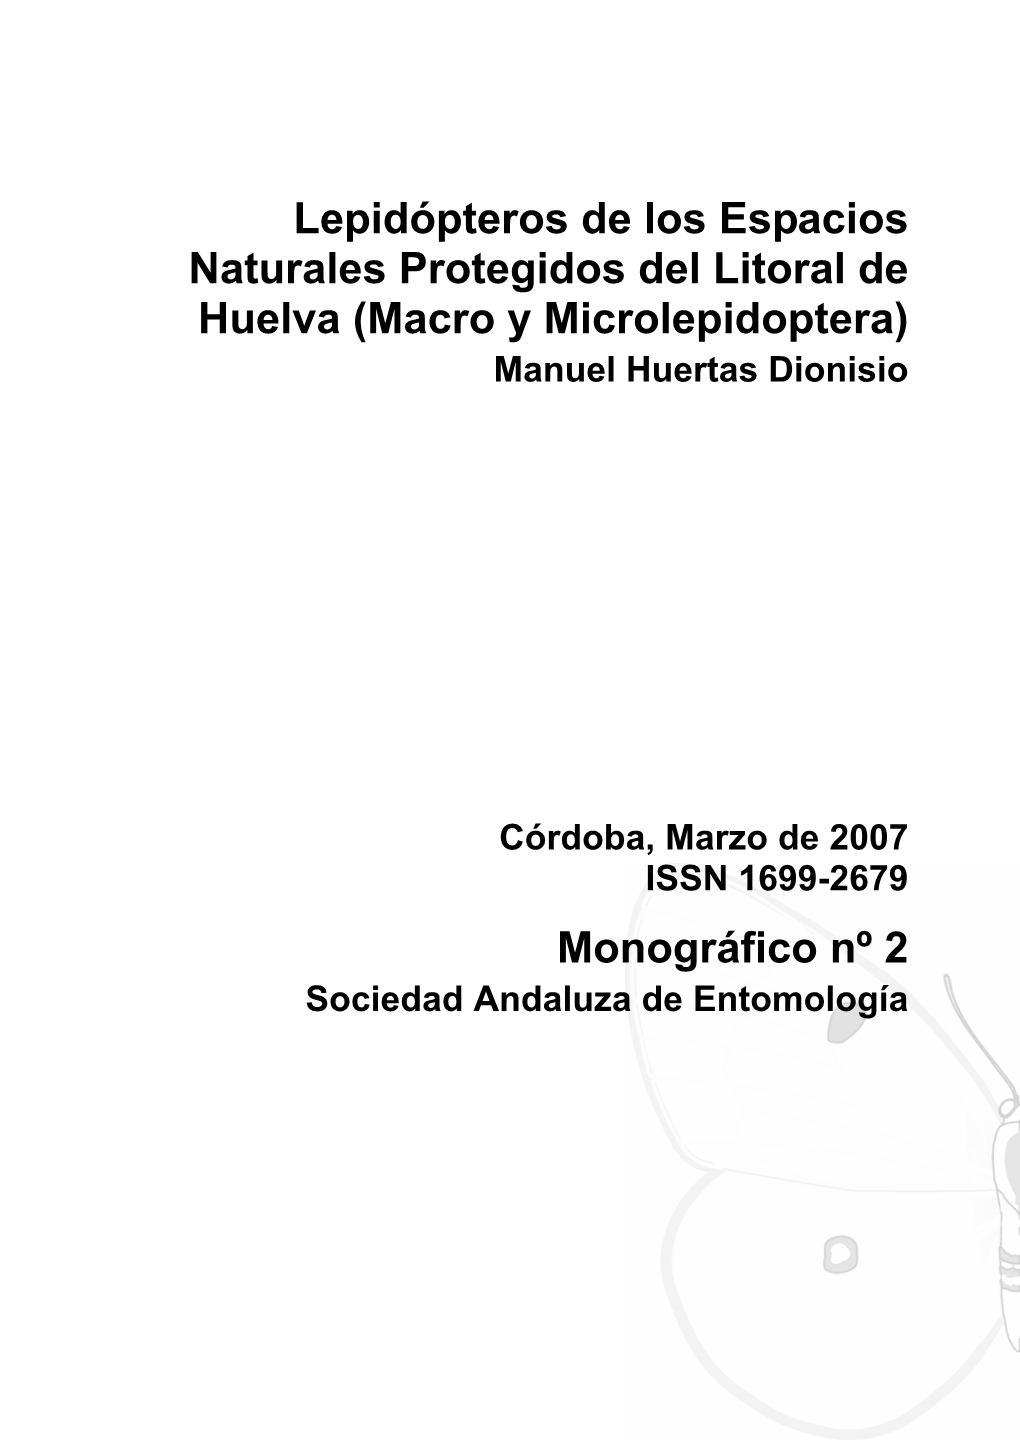 Lepidópteros De Los Espacios Naturales Protegidos Del Litoral De Huelva (Macro Y Microlepidoptera) Manuel Huertas Dionisio